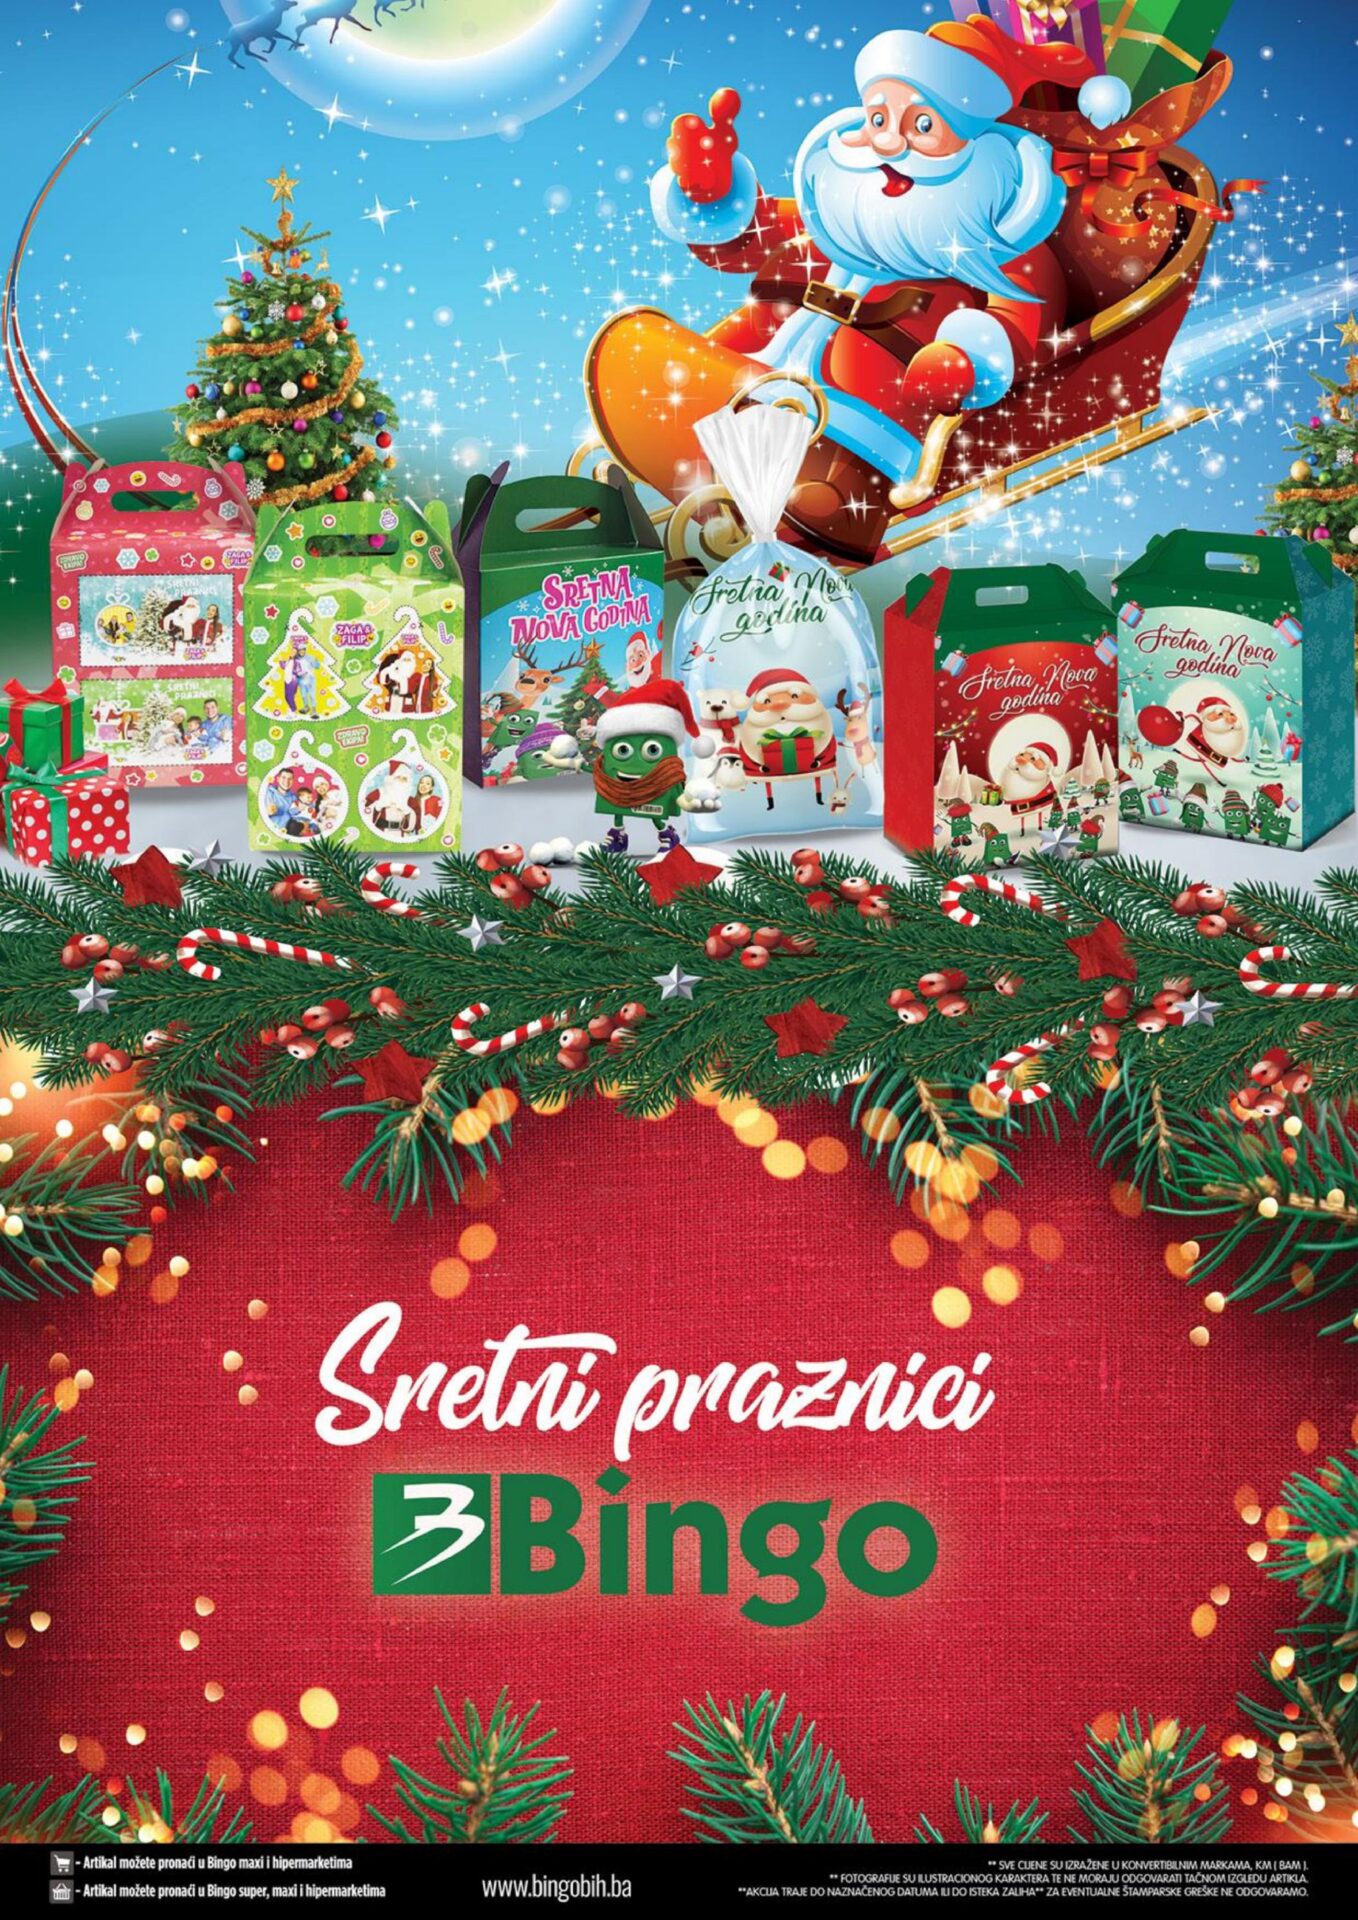 bingo akcija praznicna ponuda decembar i januar 2023. akcija traje od 20.12. do 2.1.2023. page 0024